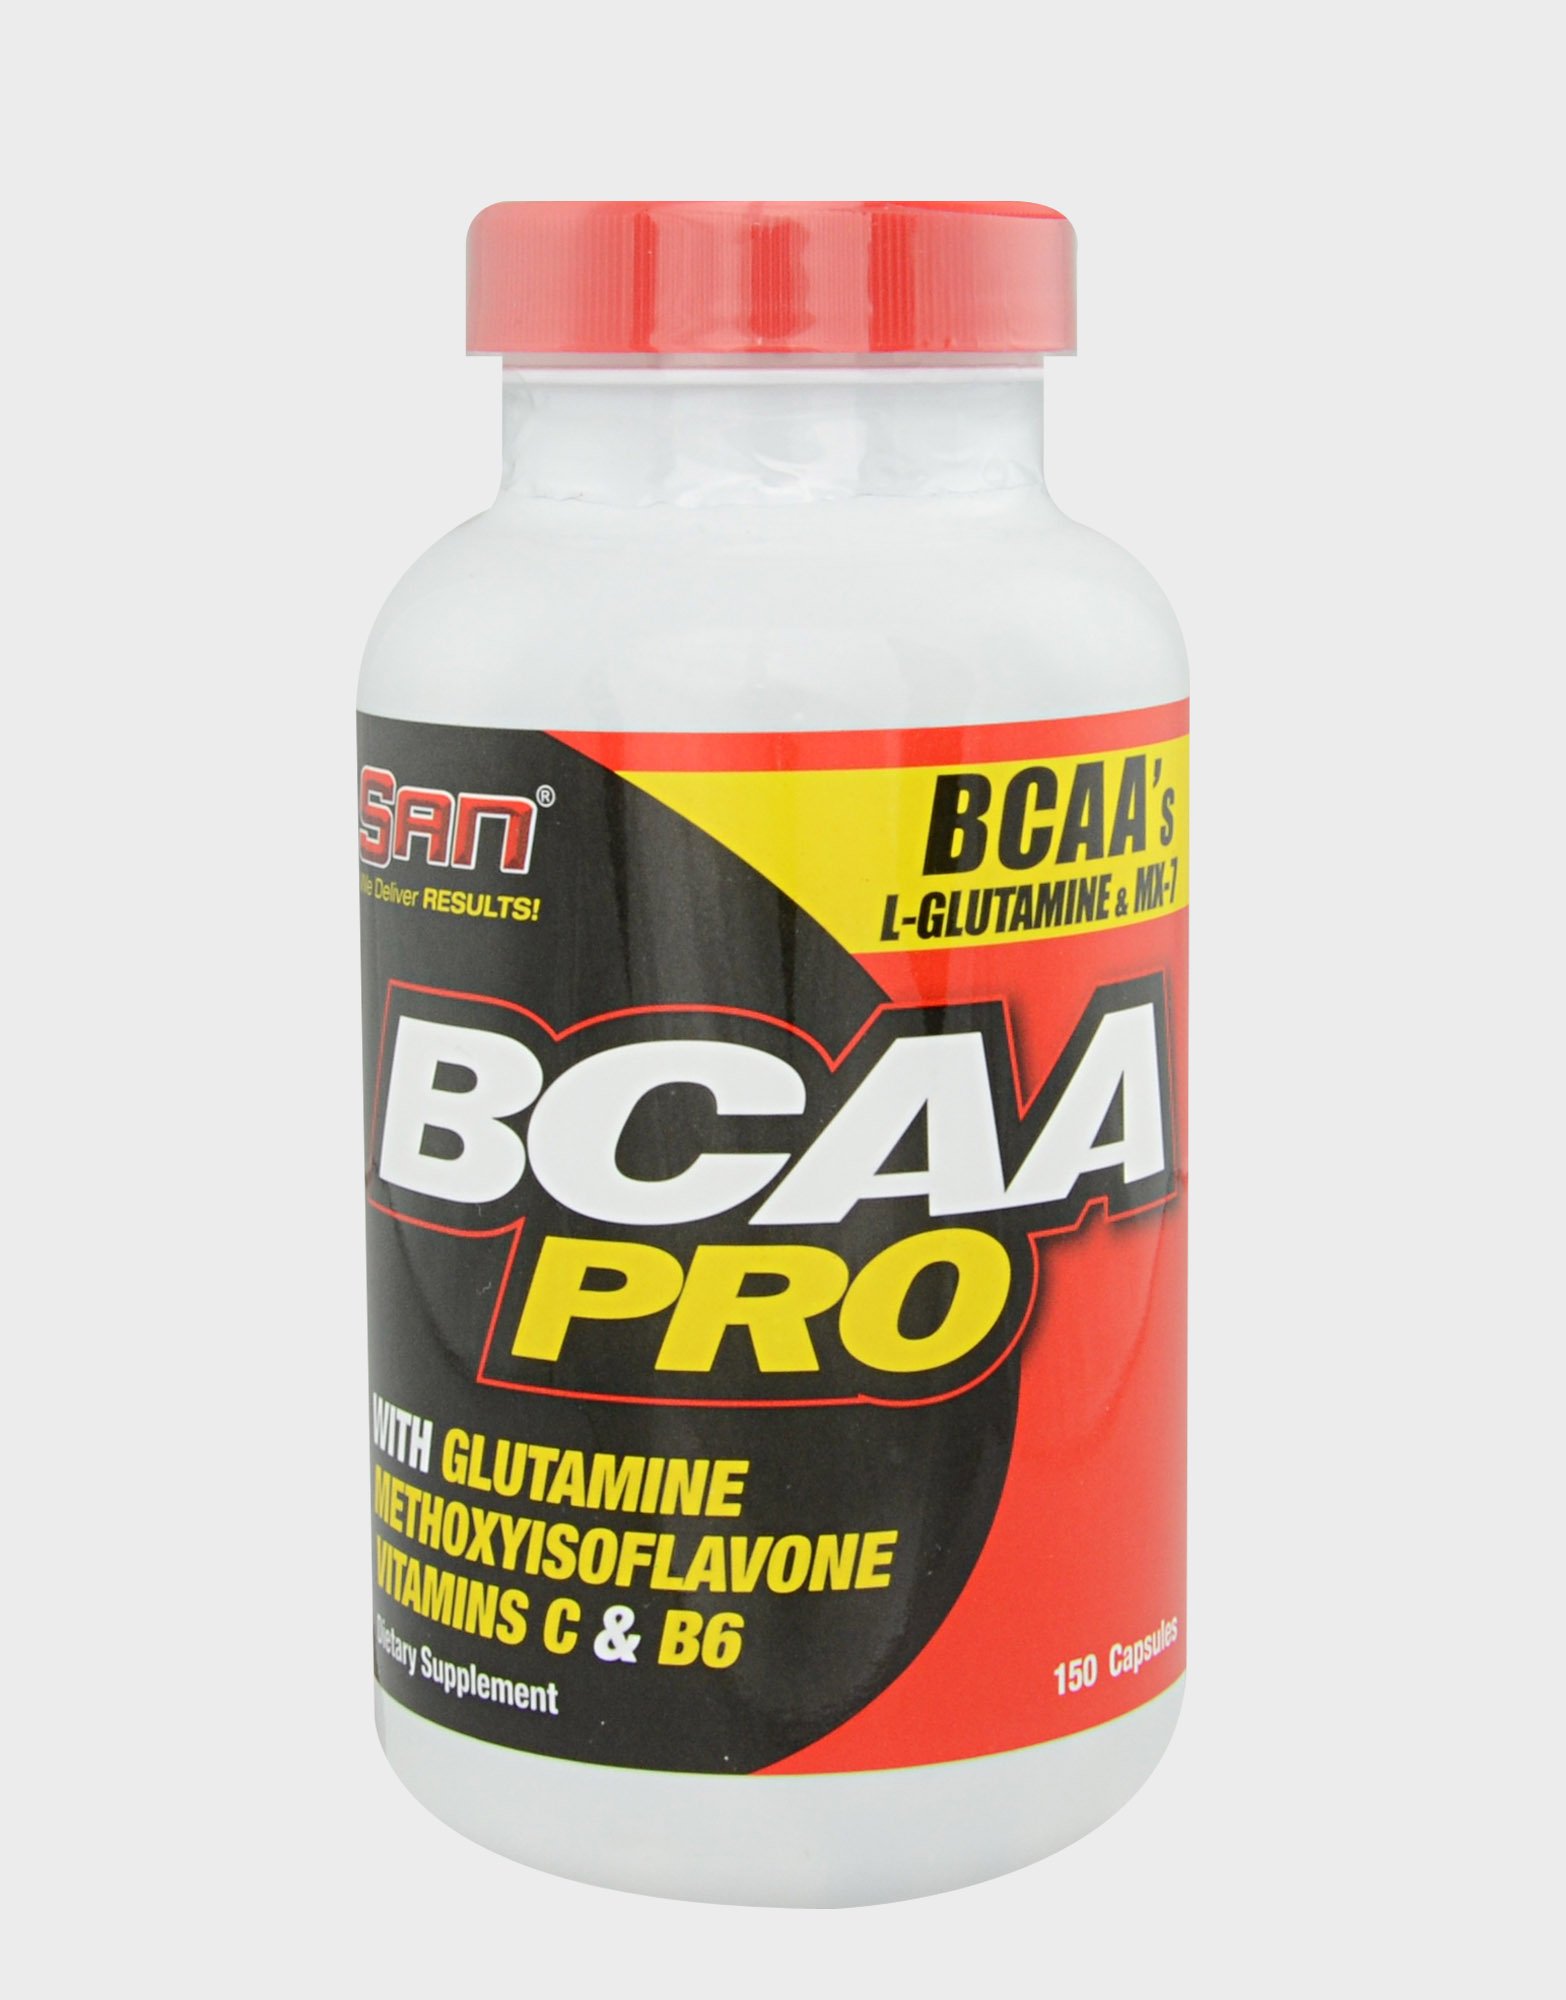 BCAA Pro, 150 pcs, San. BCAA. Weight Loss recovery Anti-catabolic properties Lean muscle mass 